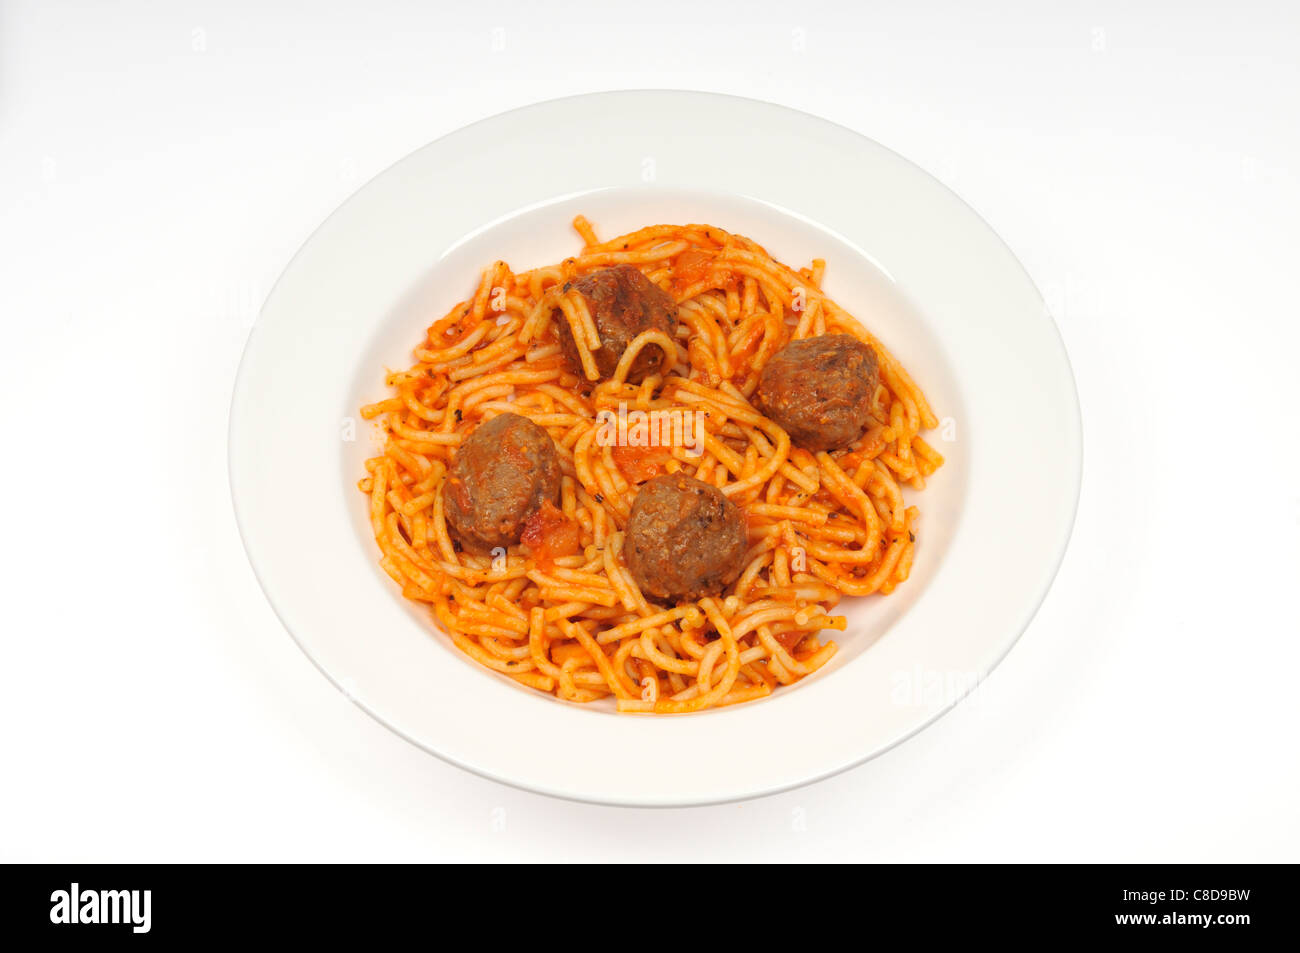 Une assiette de spaghetti et boulettes de viande dans une boule blanche sur fond blanc. USA. Banque D'Images